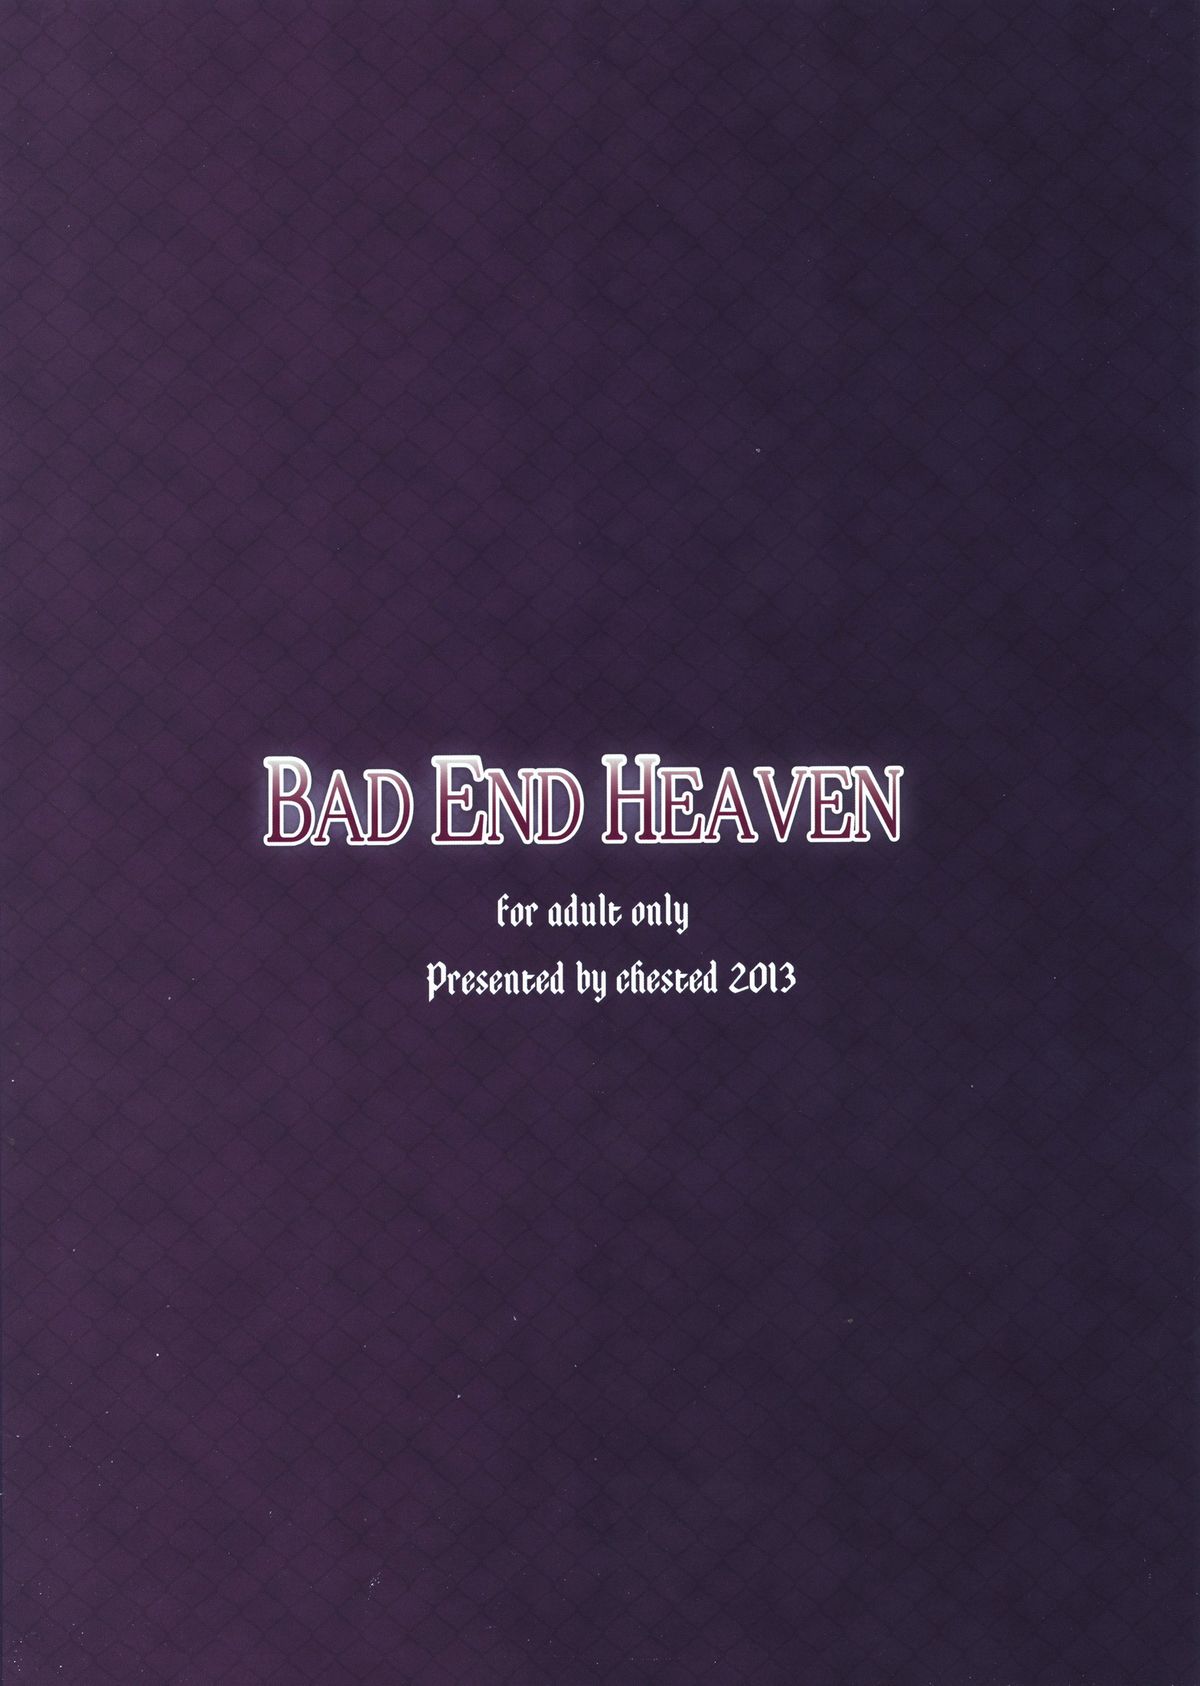 (みみけっと 28) [chested (特)] BAD END HEAVEN (ソードアート · オンライン)